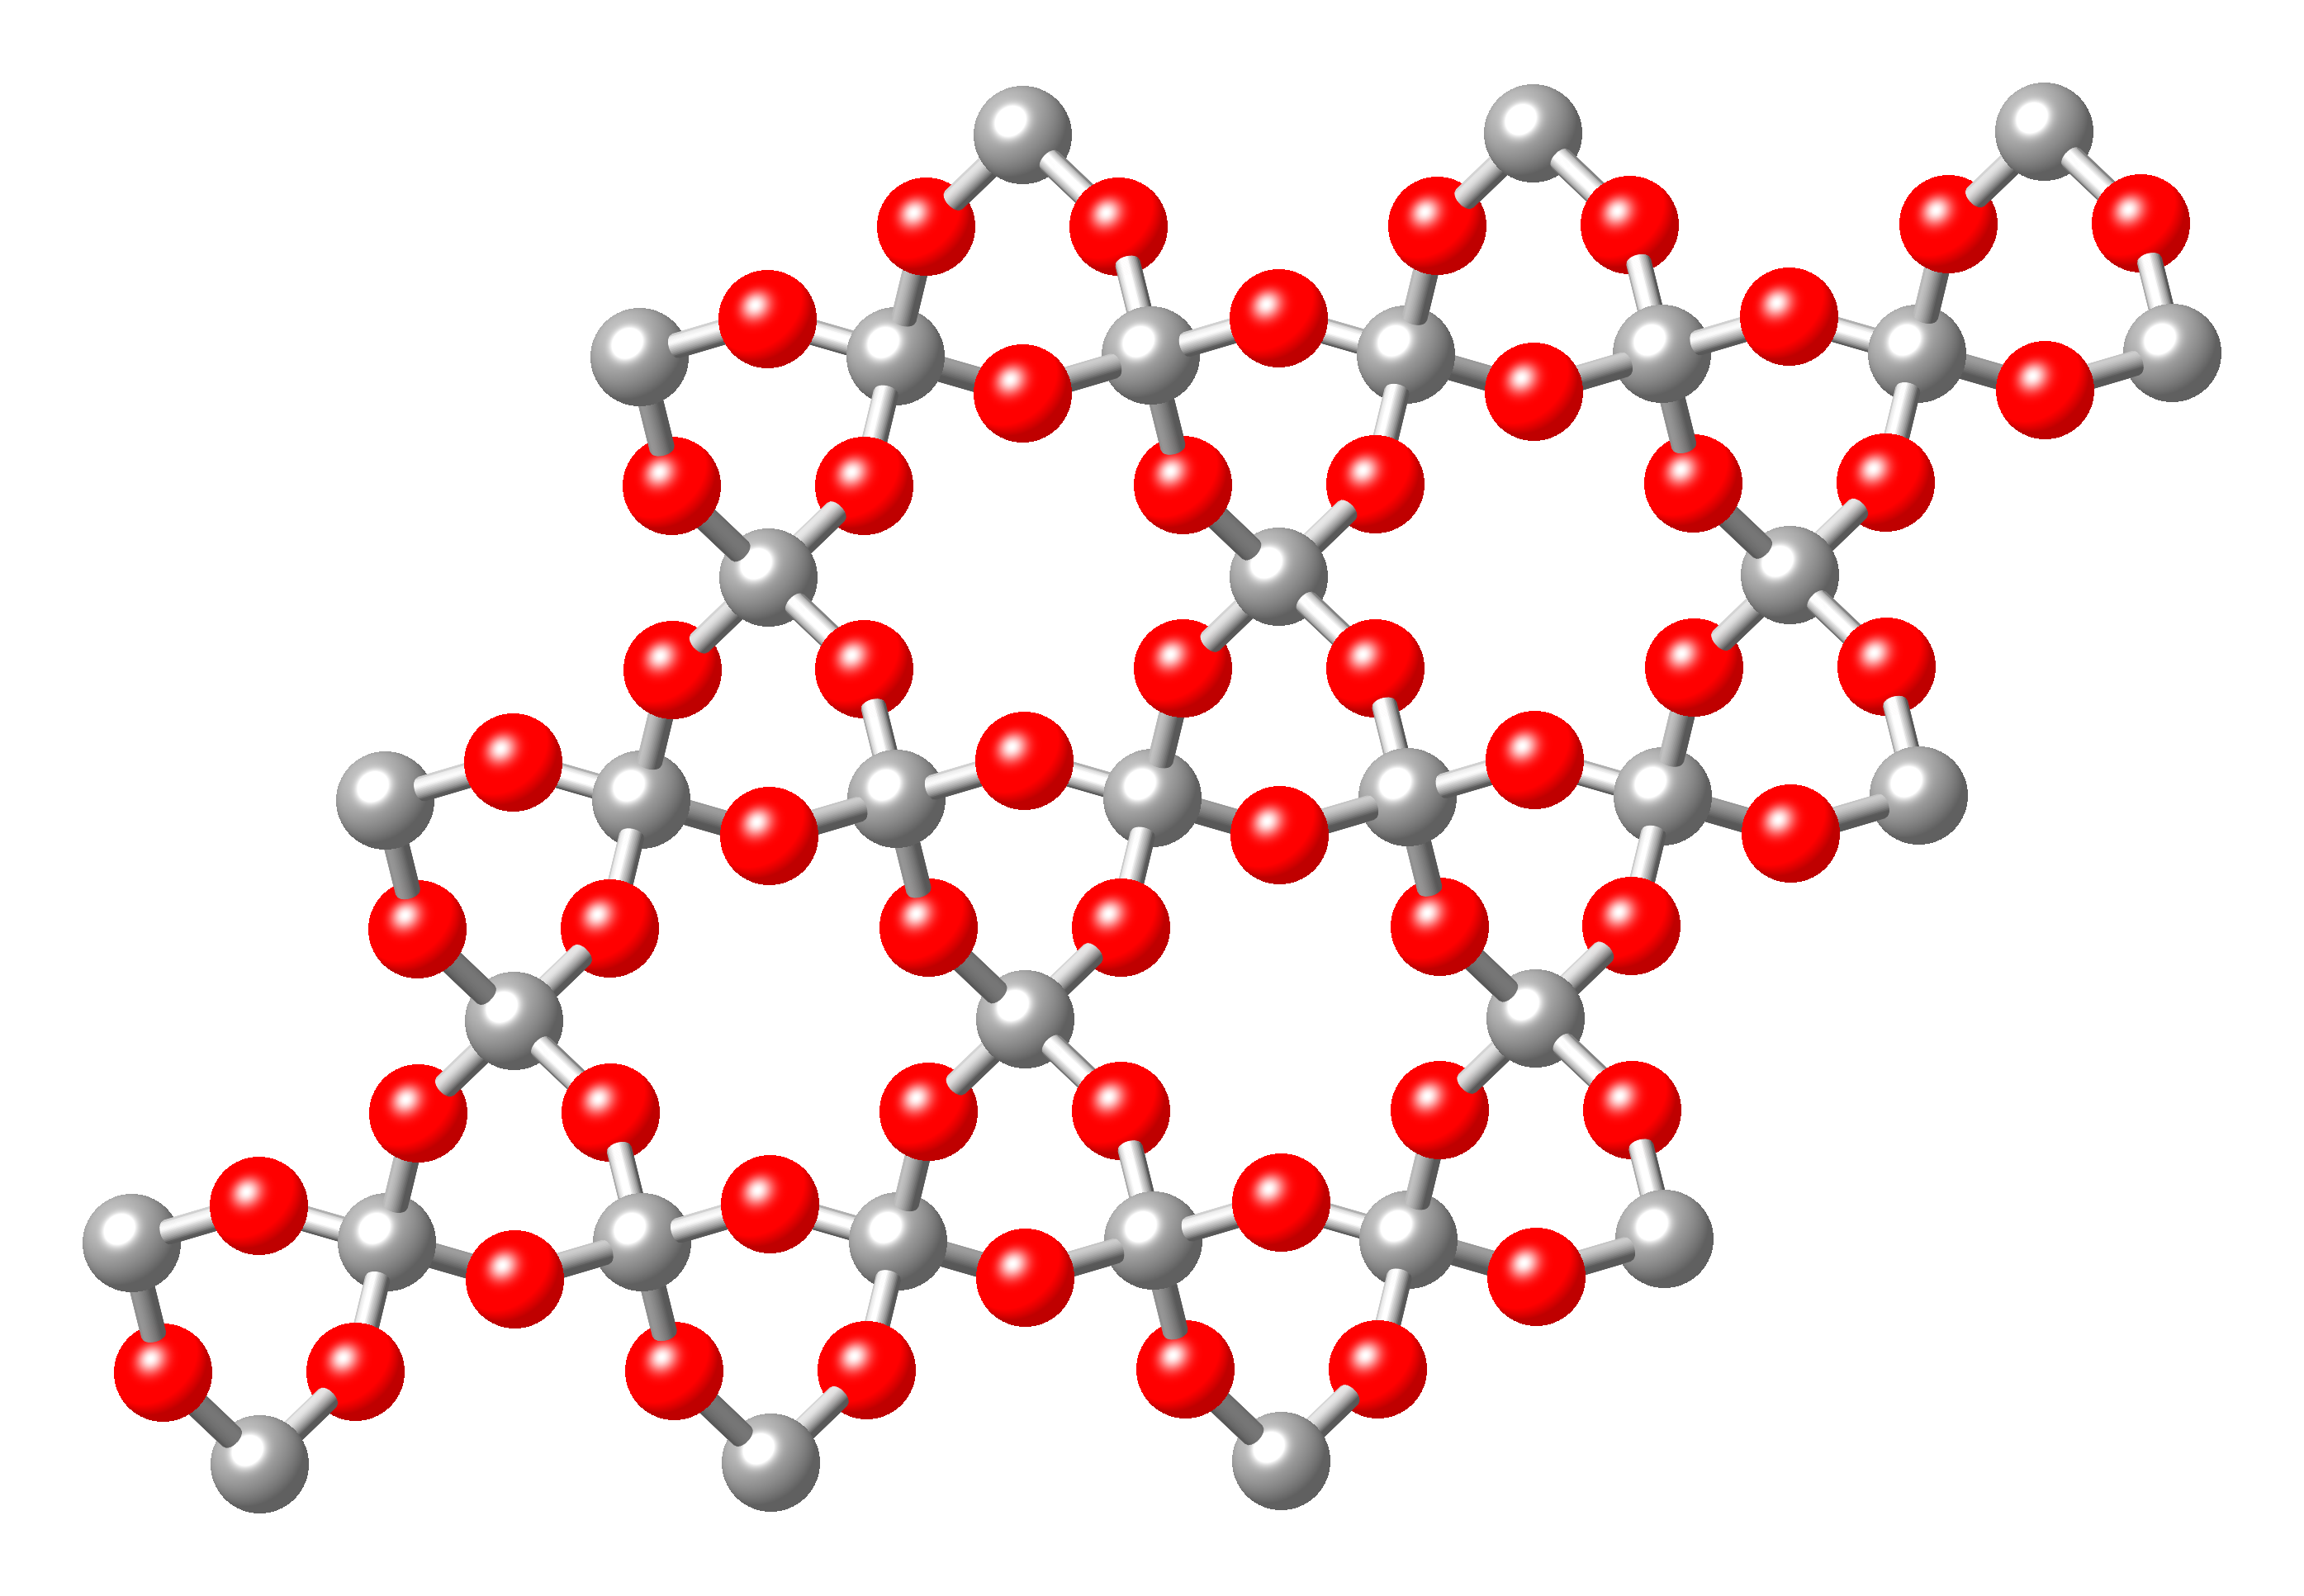 Sio2 d. Атомная решетка sio2. Кристаллическая решетка кремнезема sio2. Диоксид кремния строение молекулы. Диоксид кремния кристаллическая решетка.